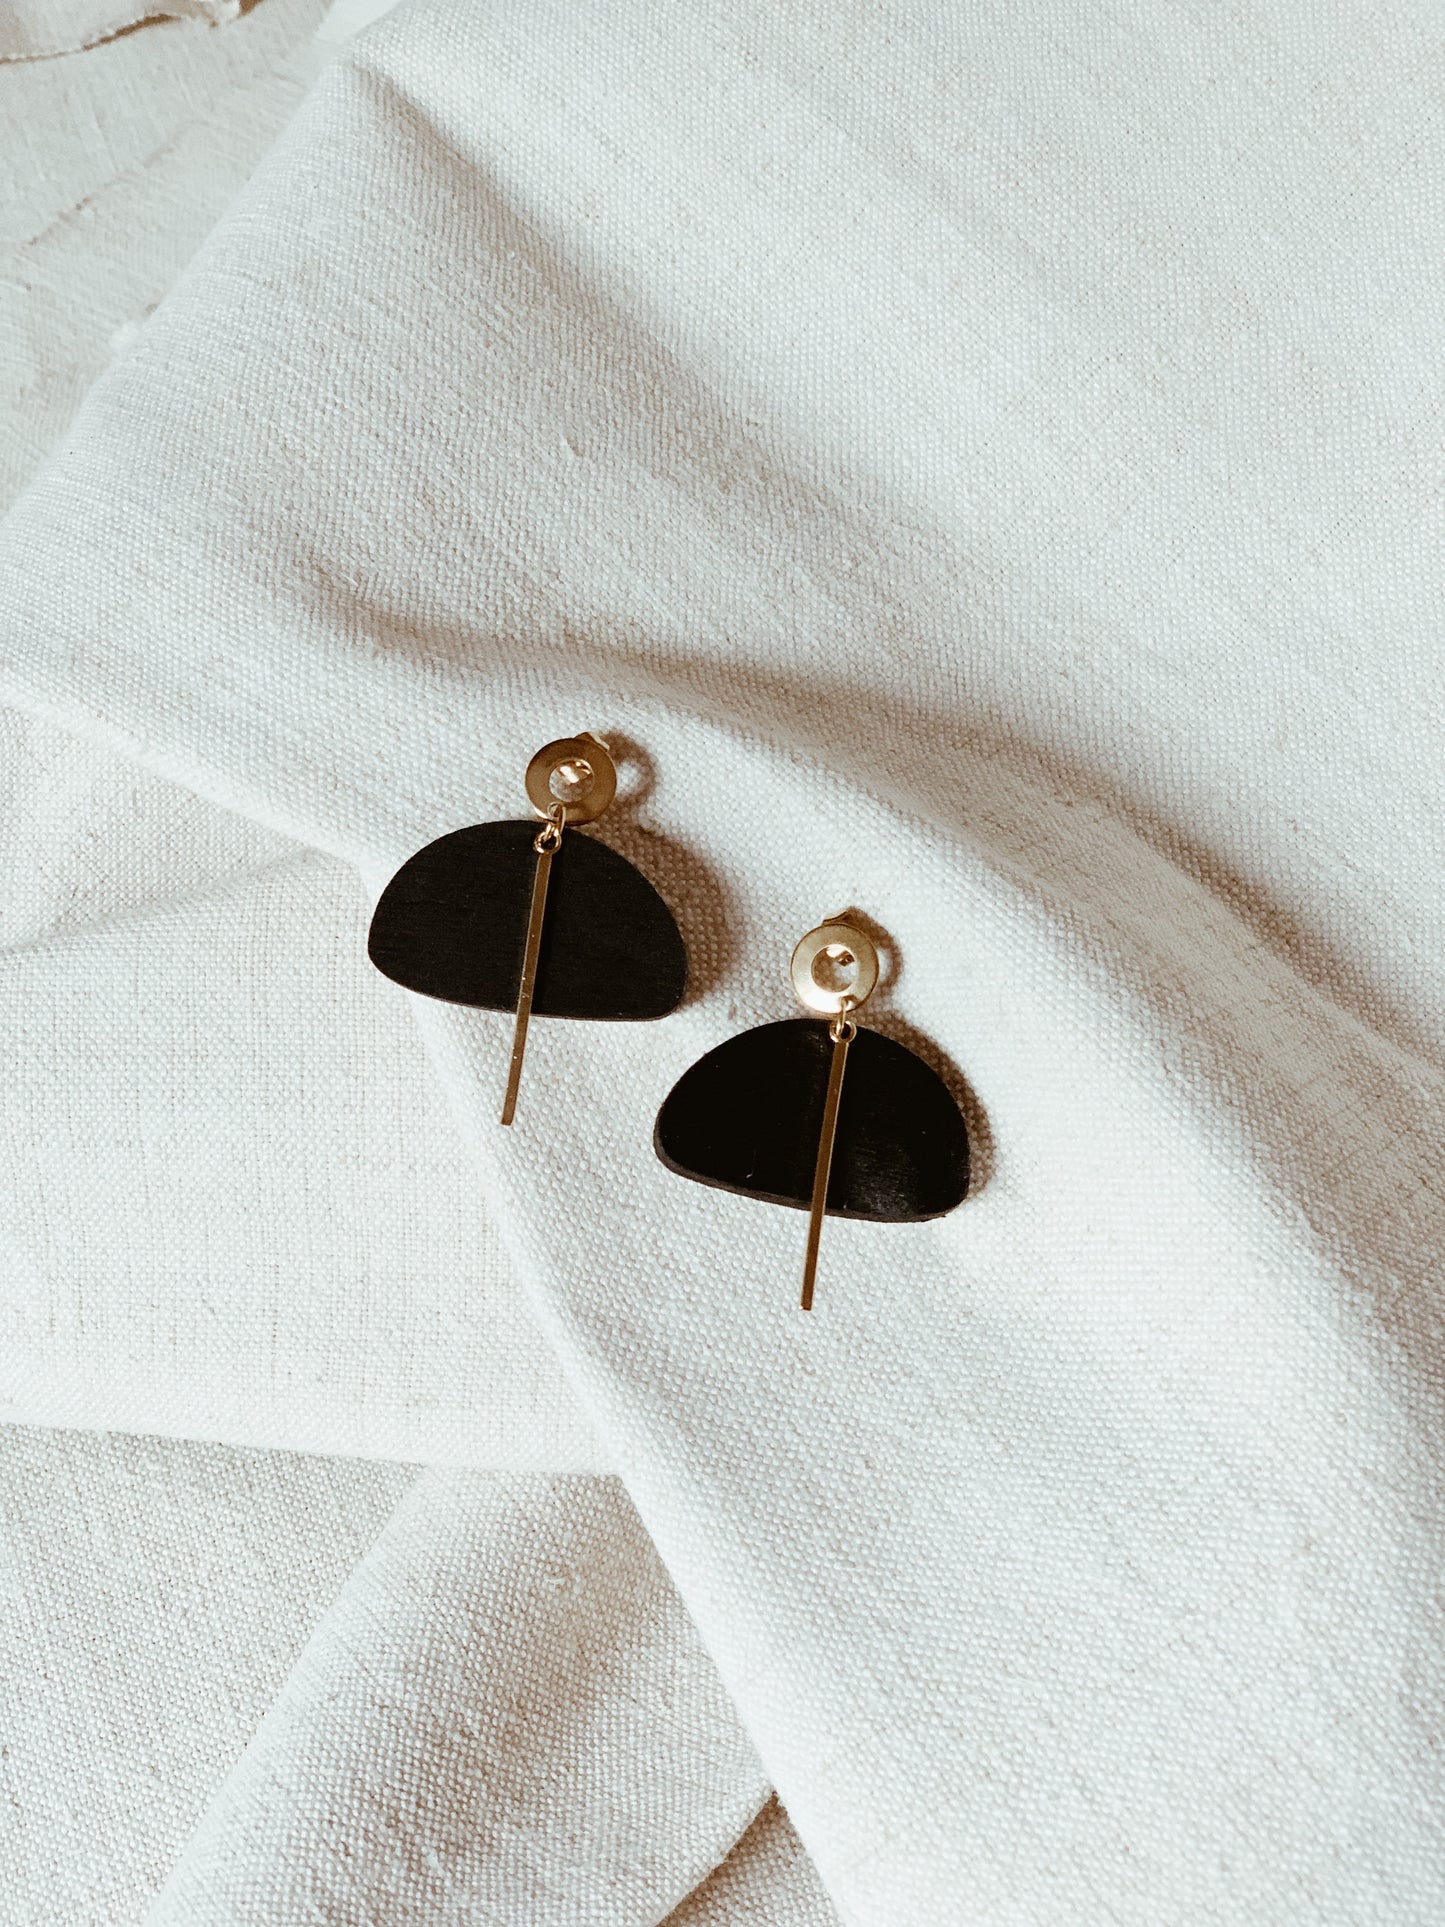 Zuni earrings